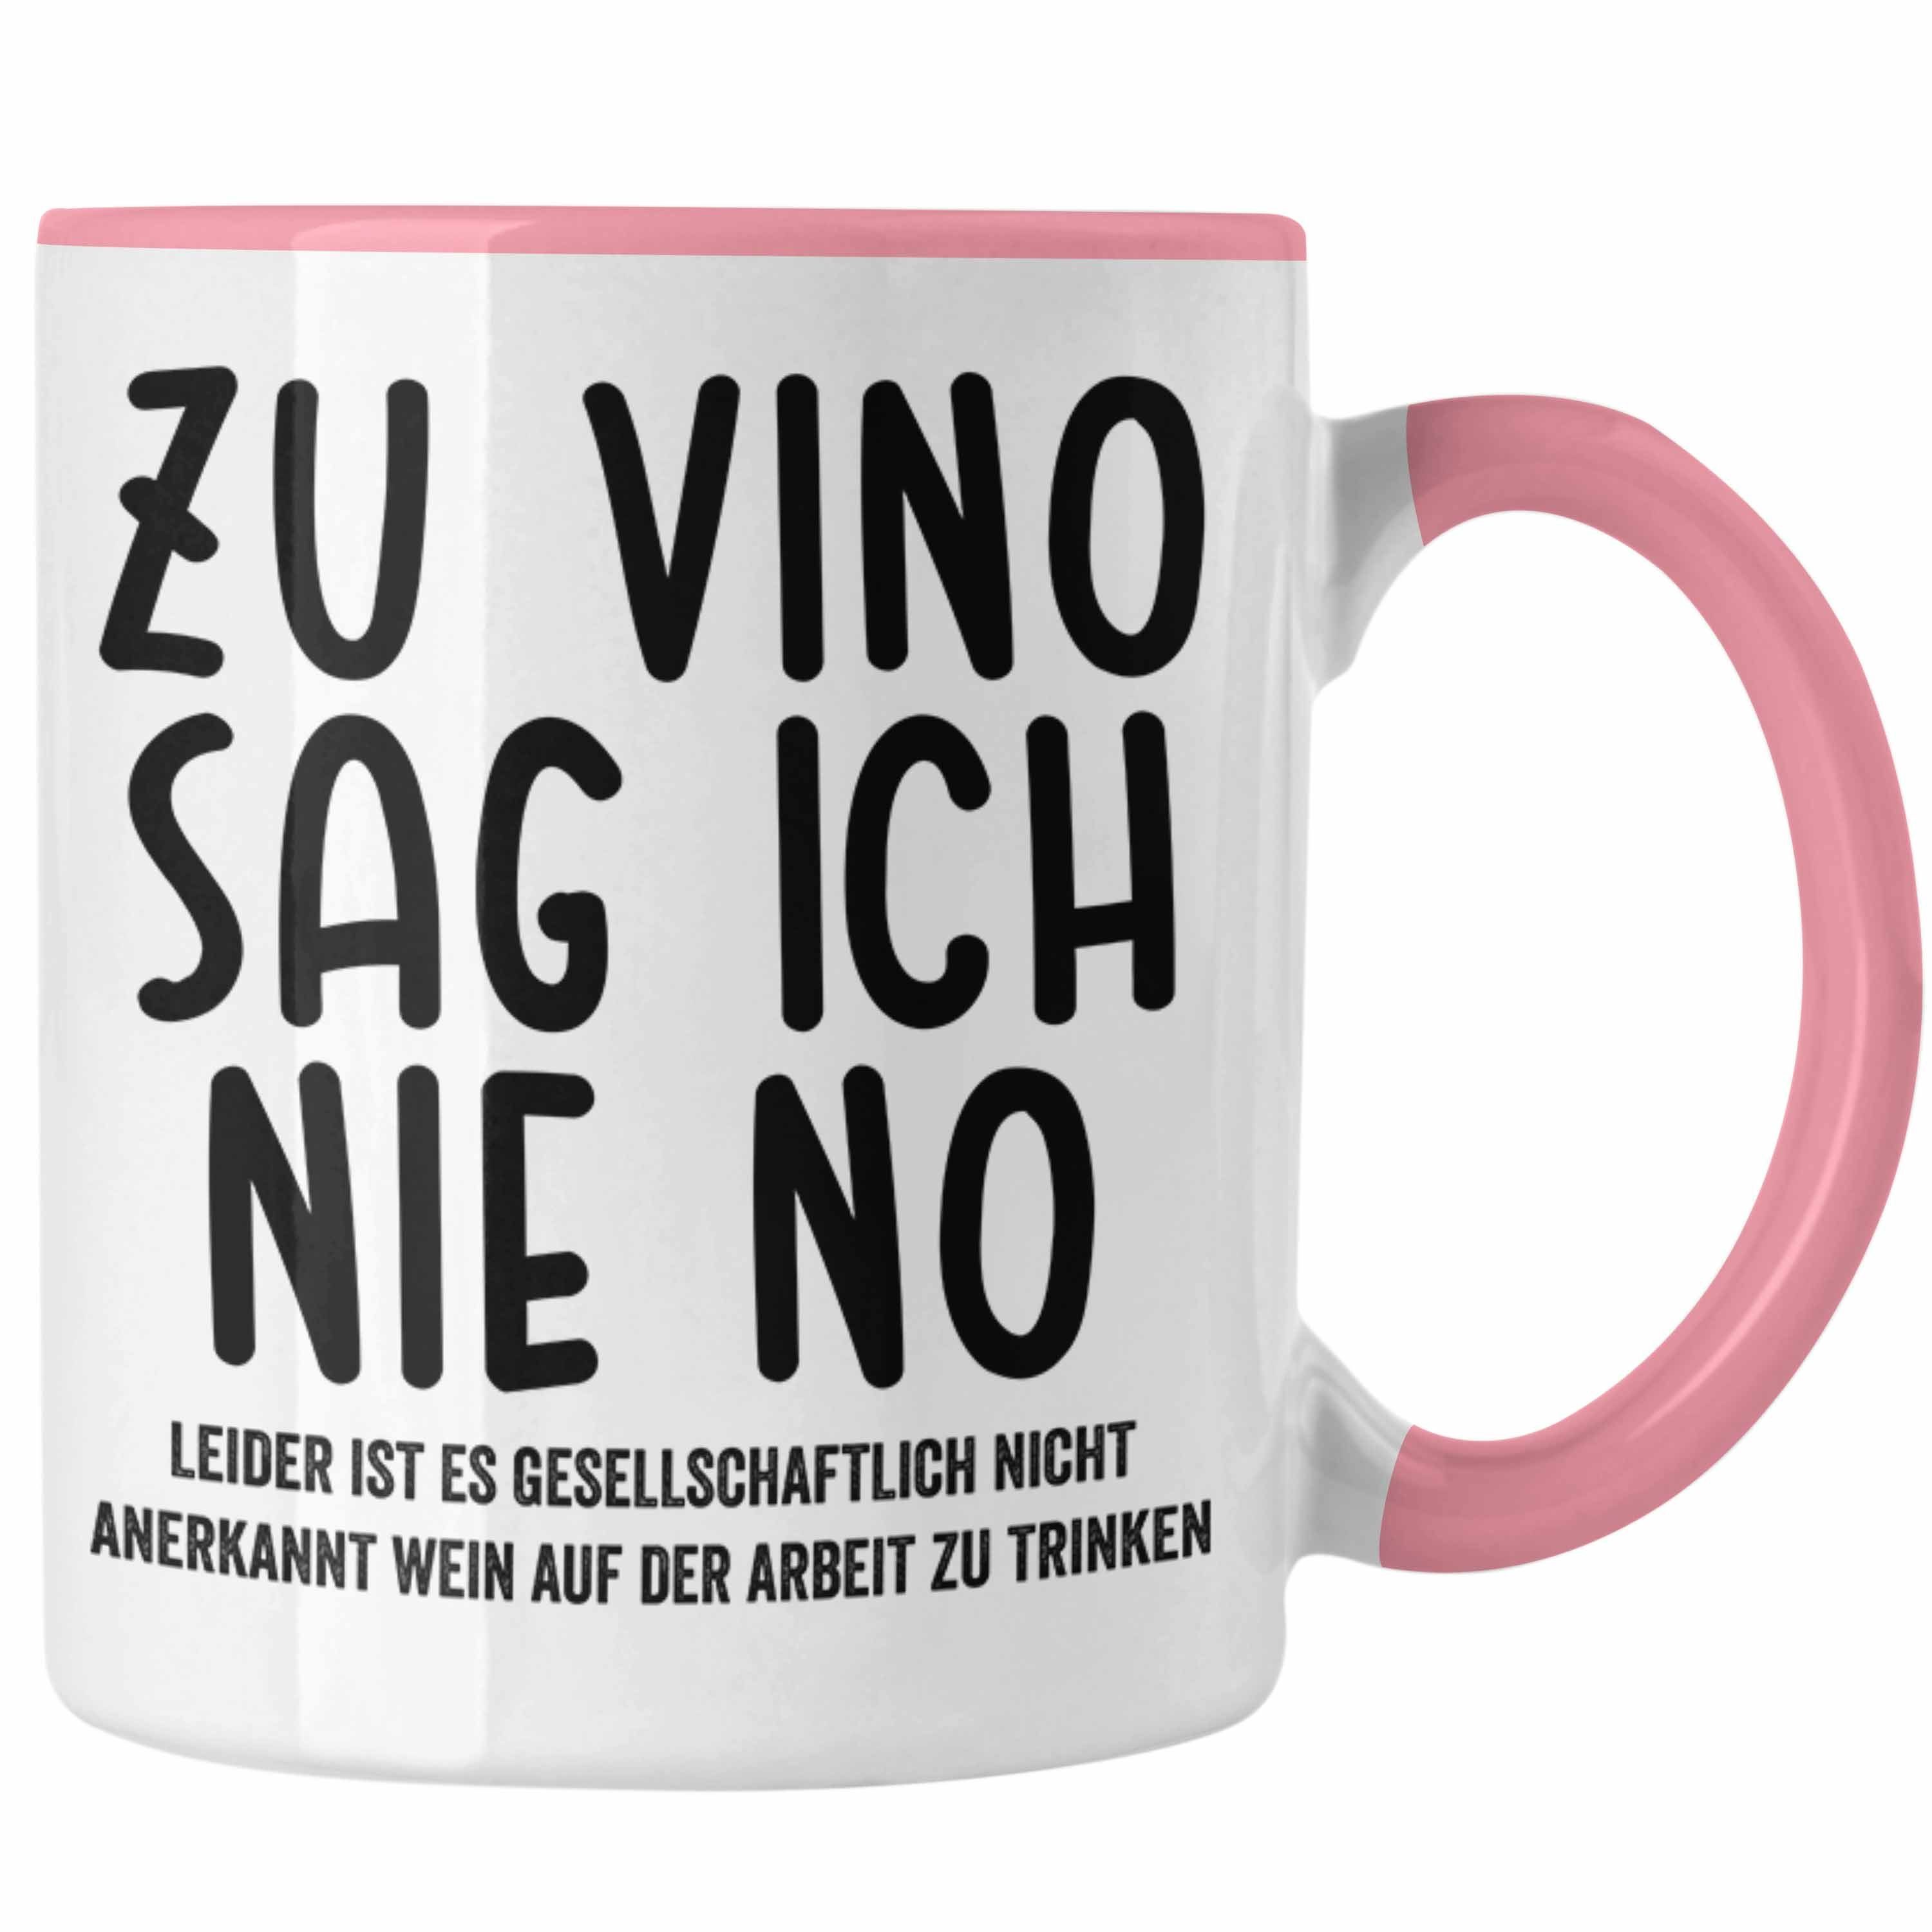 Trendation Tasse Trendation - Zu Vino Sag Ich Nie No Lustige Tasse mit Spruch Weinliebhaber Arbeit Geschenkidee Büro Rosa